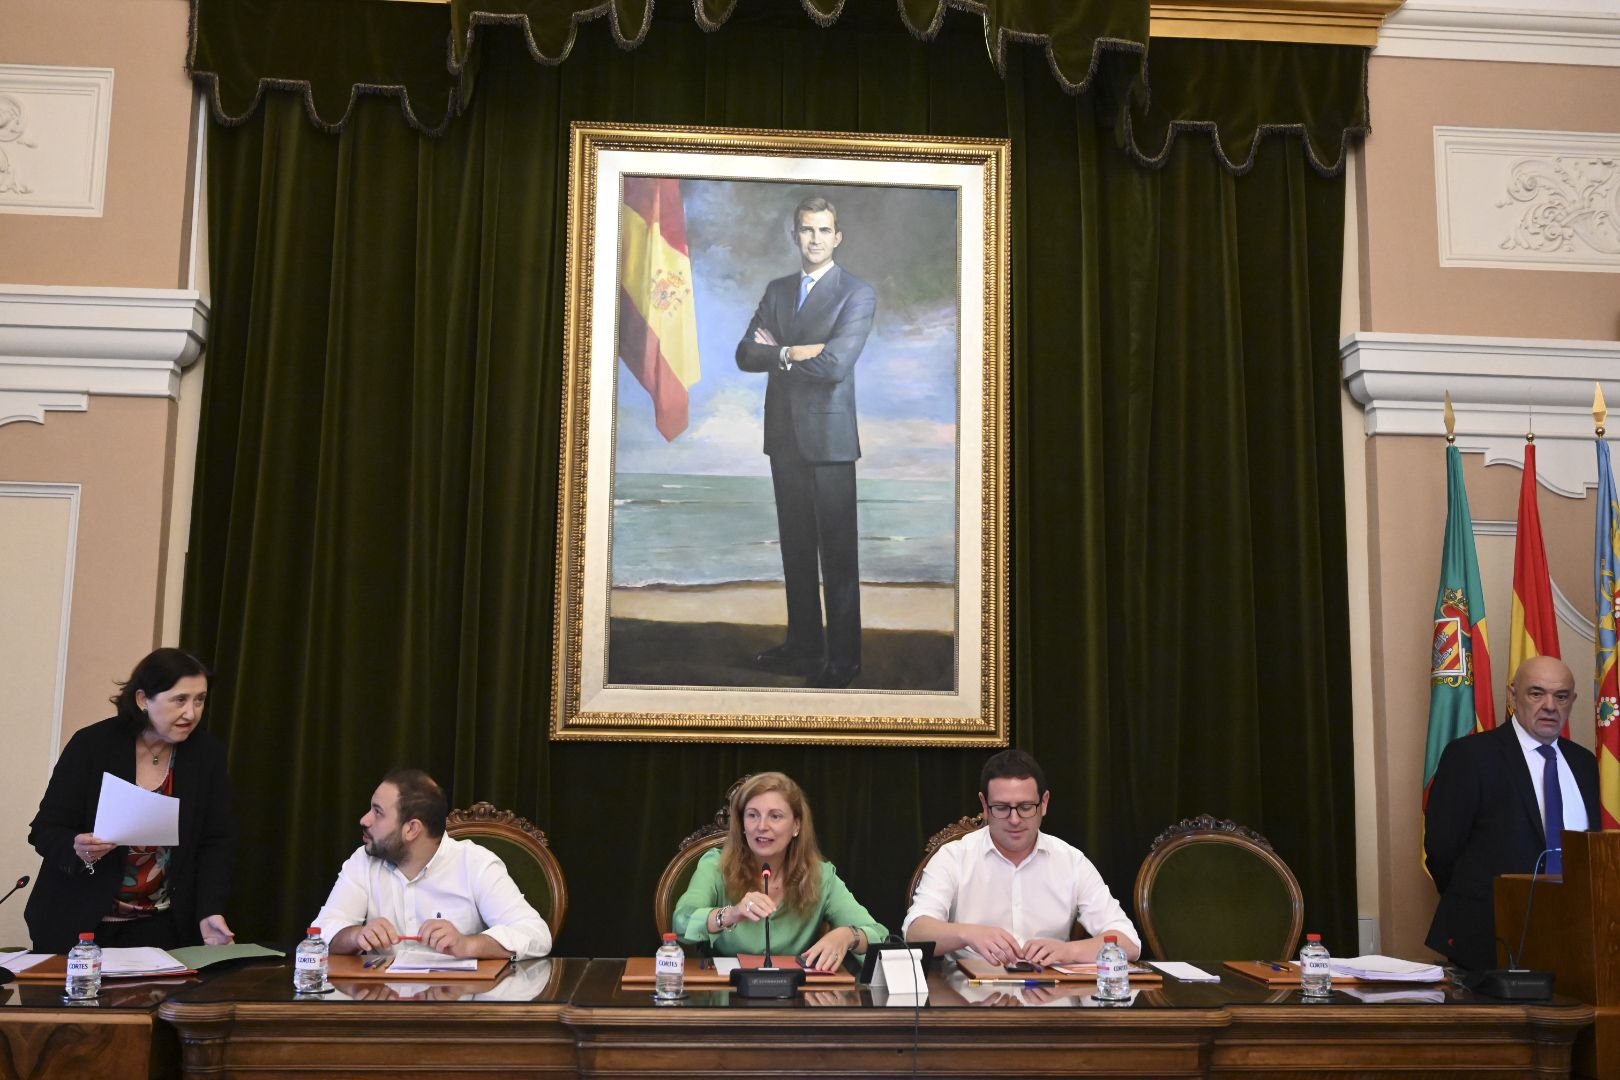 Las emotivas imágenes del último pleno de la legislatura en el Ayuntamiento de Castelló